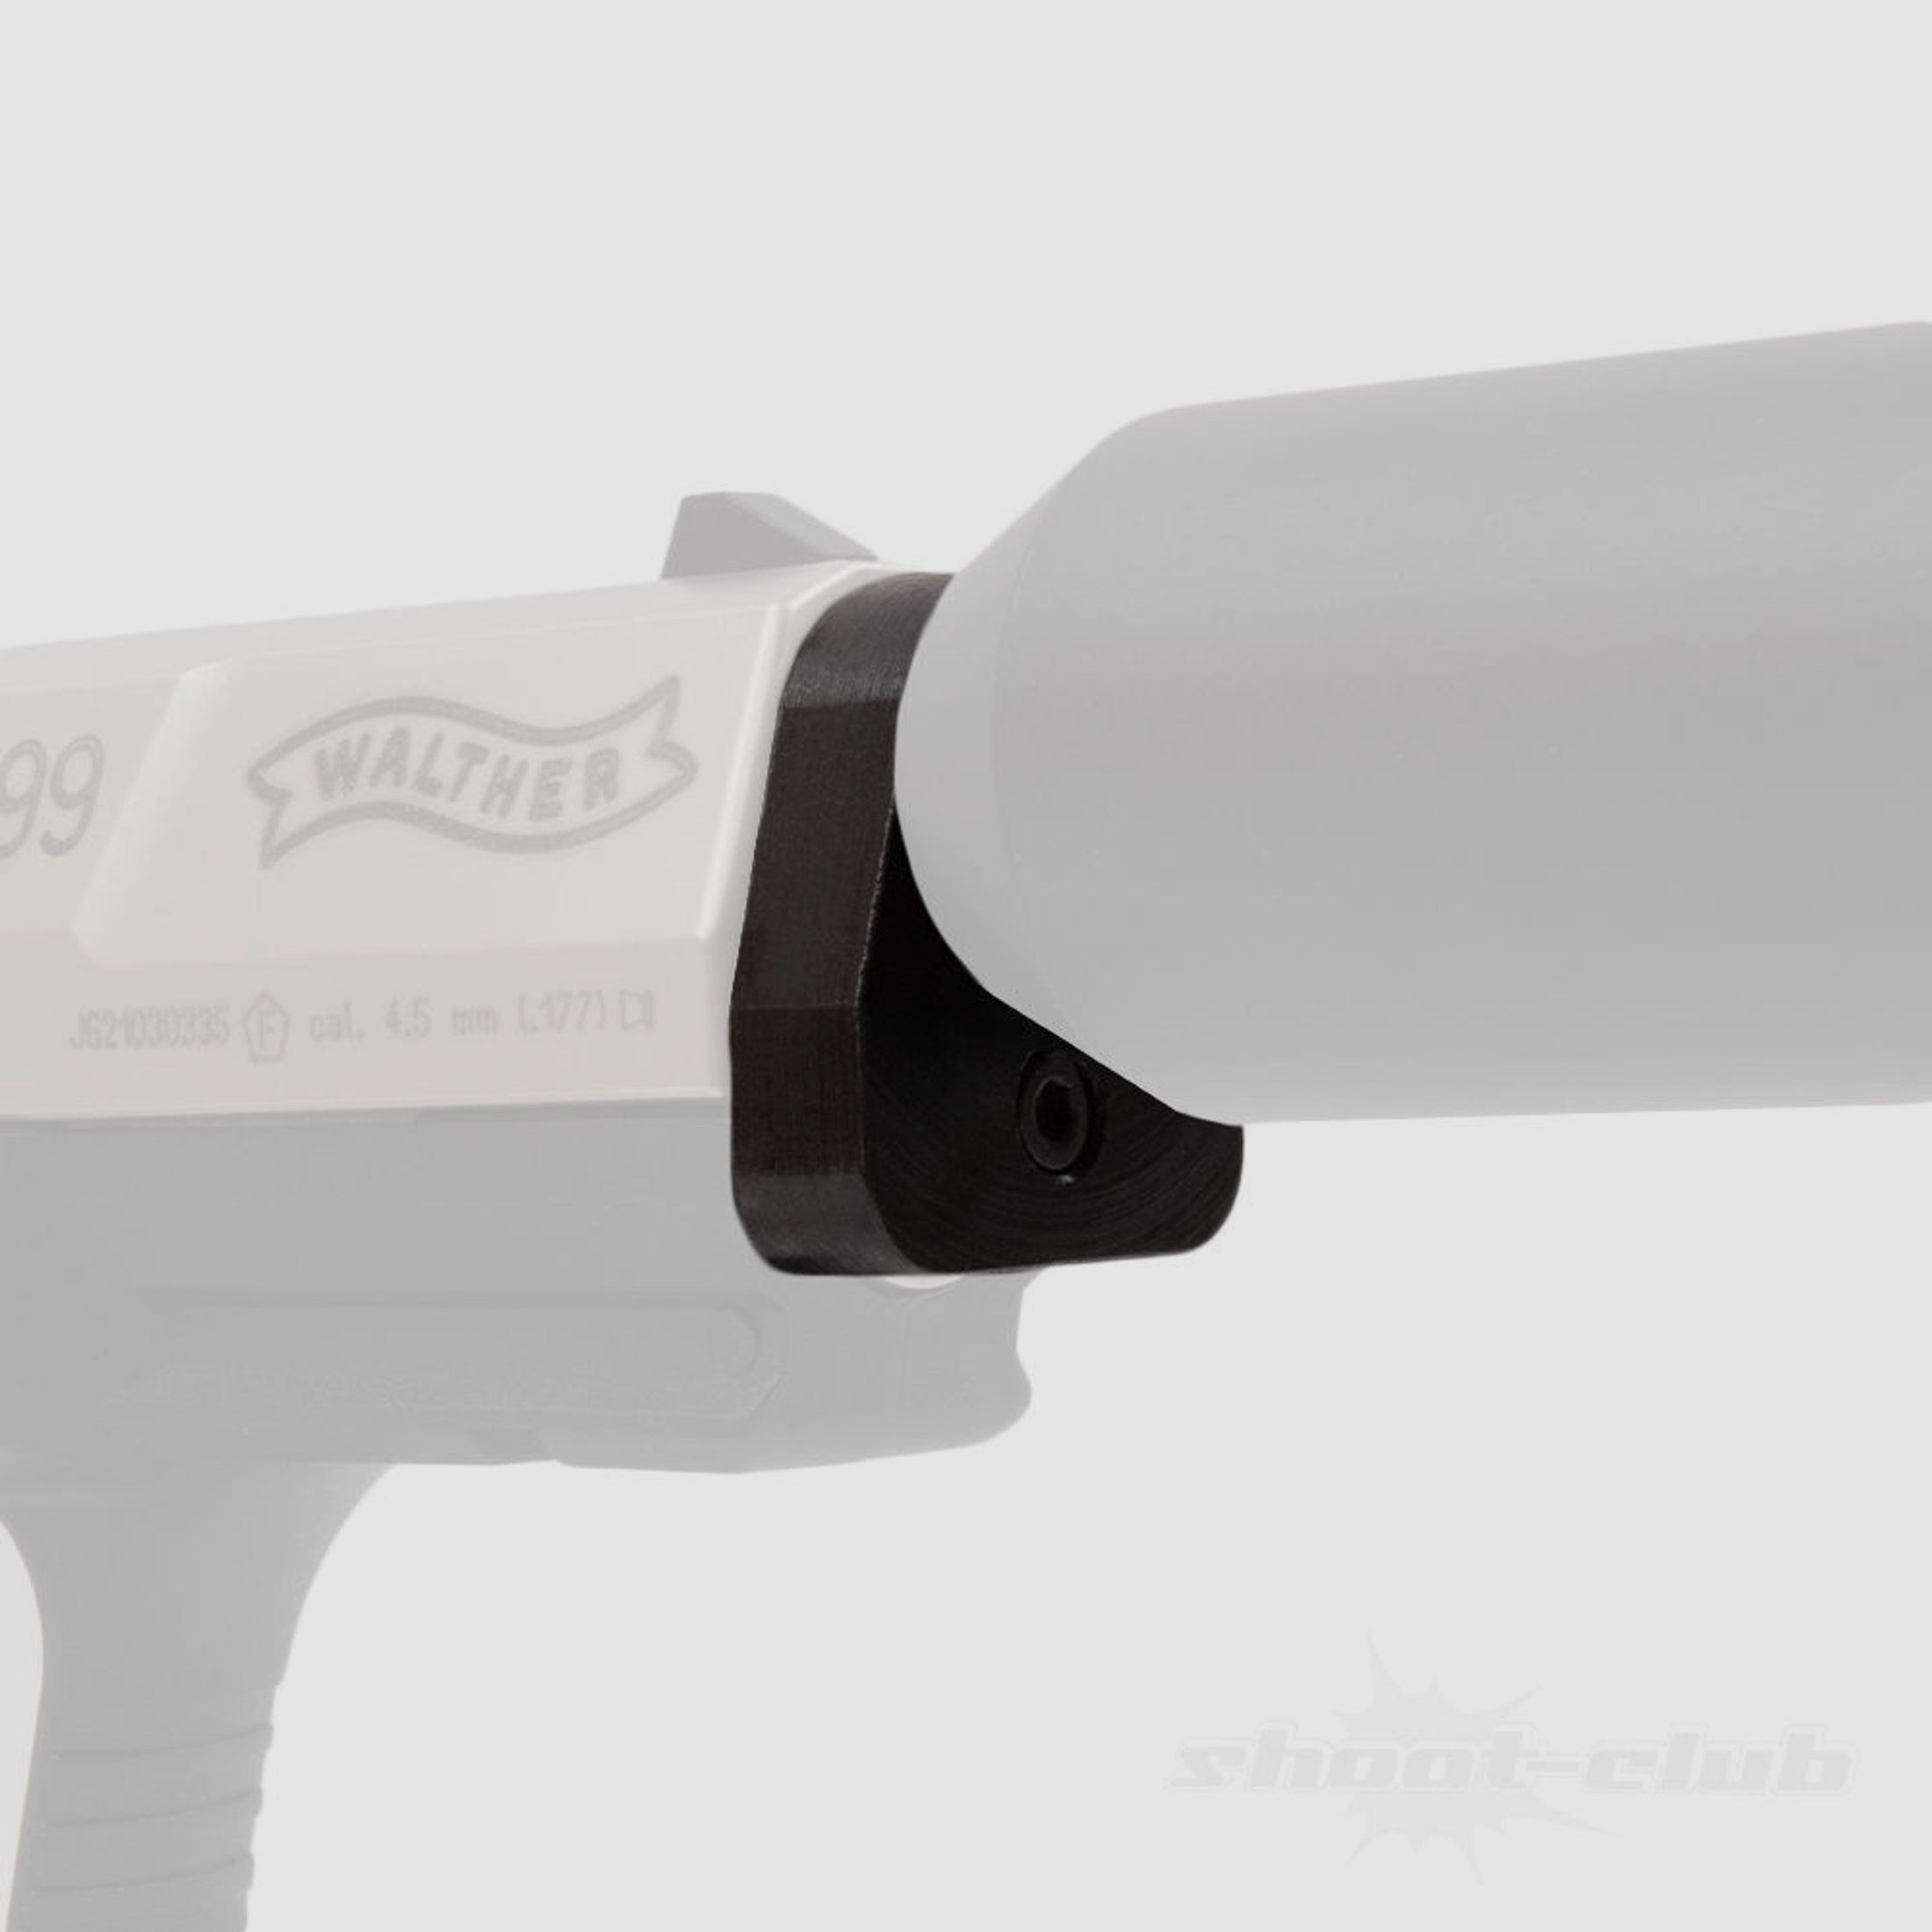 Schalldämpferadapter für Walther CP99, NightHawk, Umarex CPS CO2 Pistole - 1/2"UNF